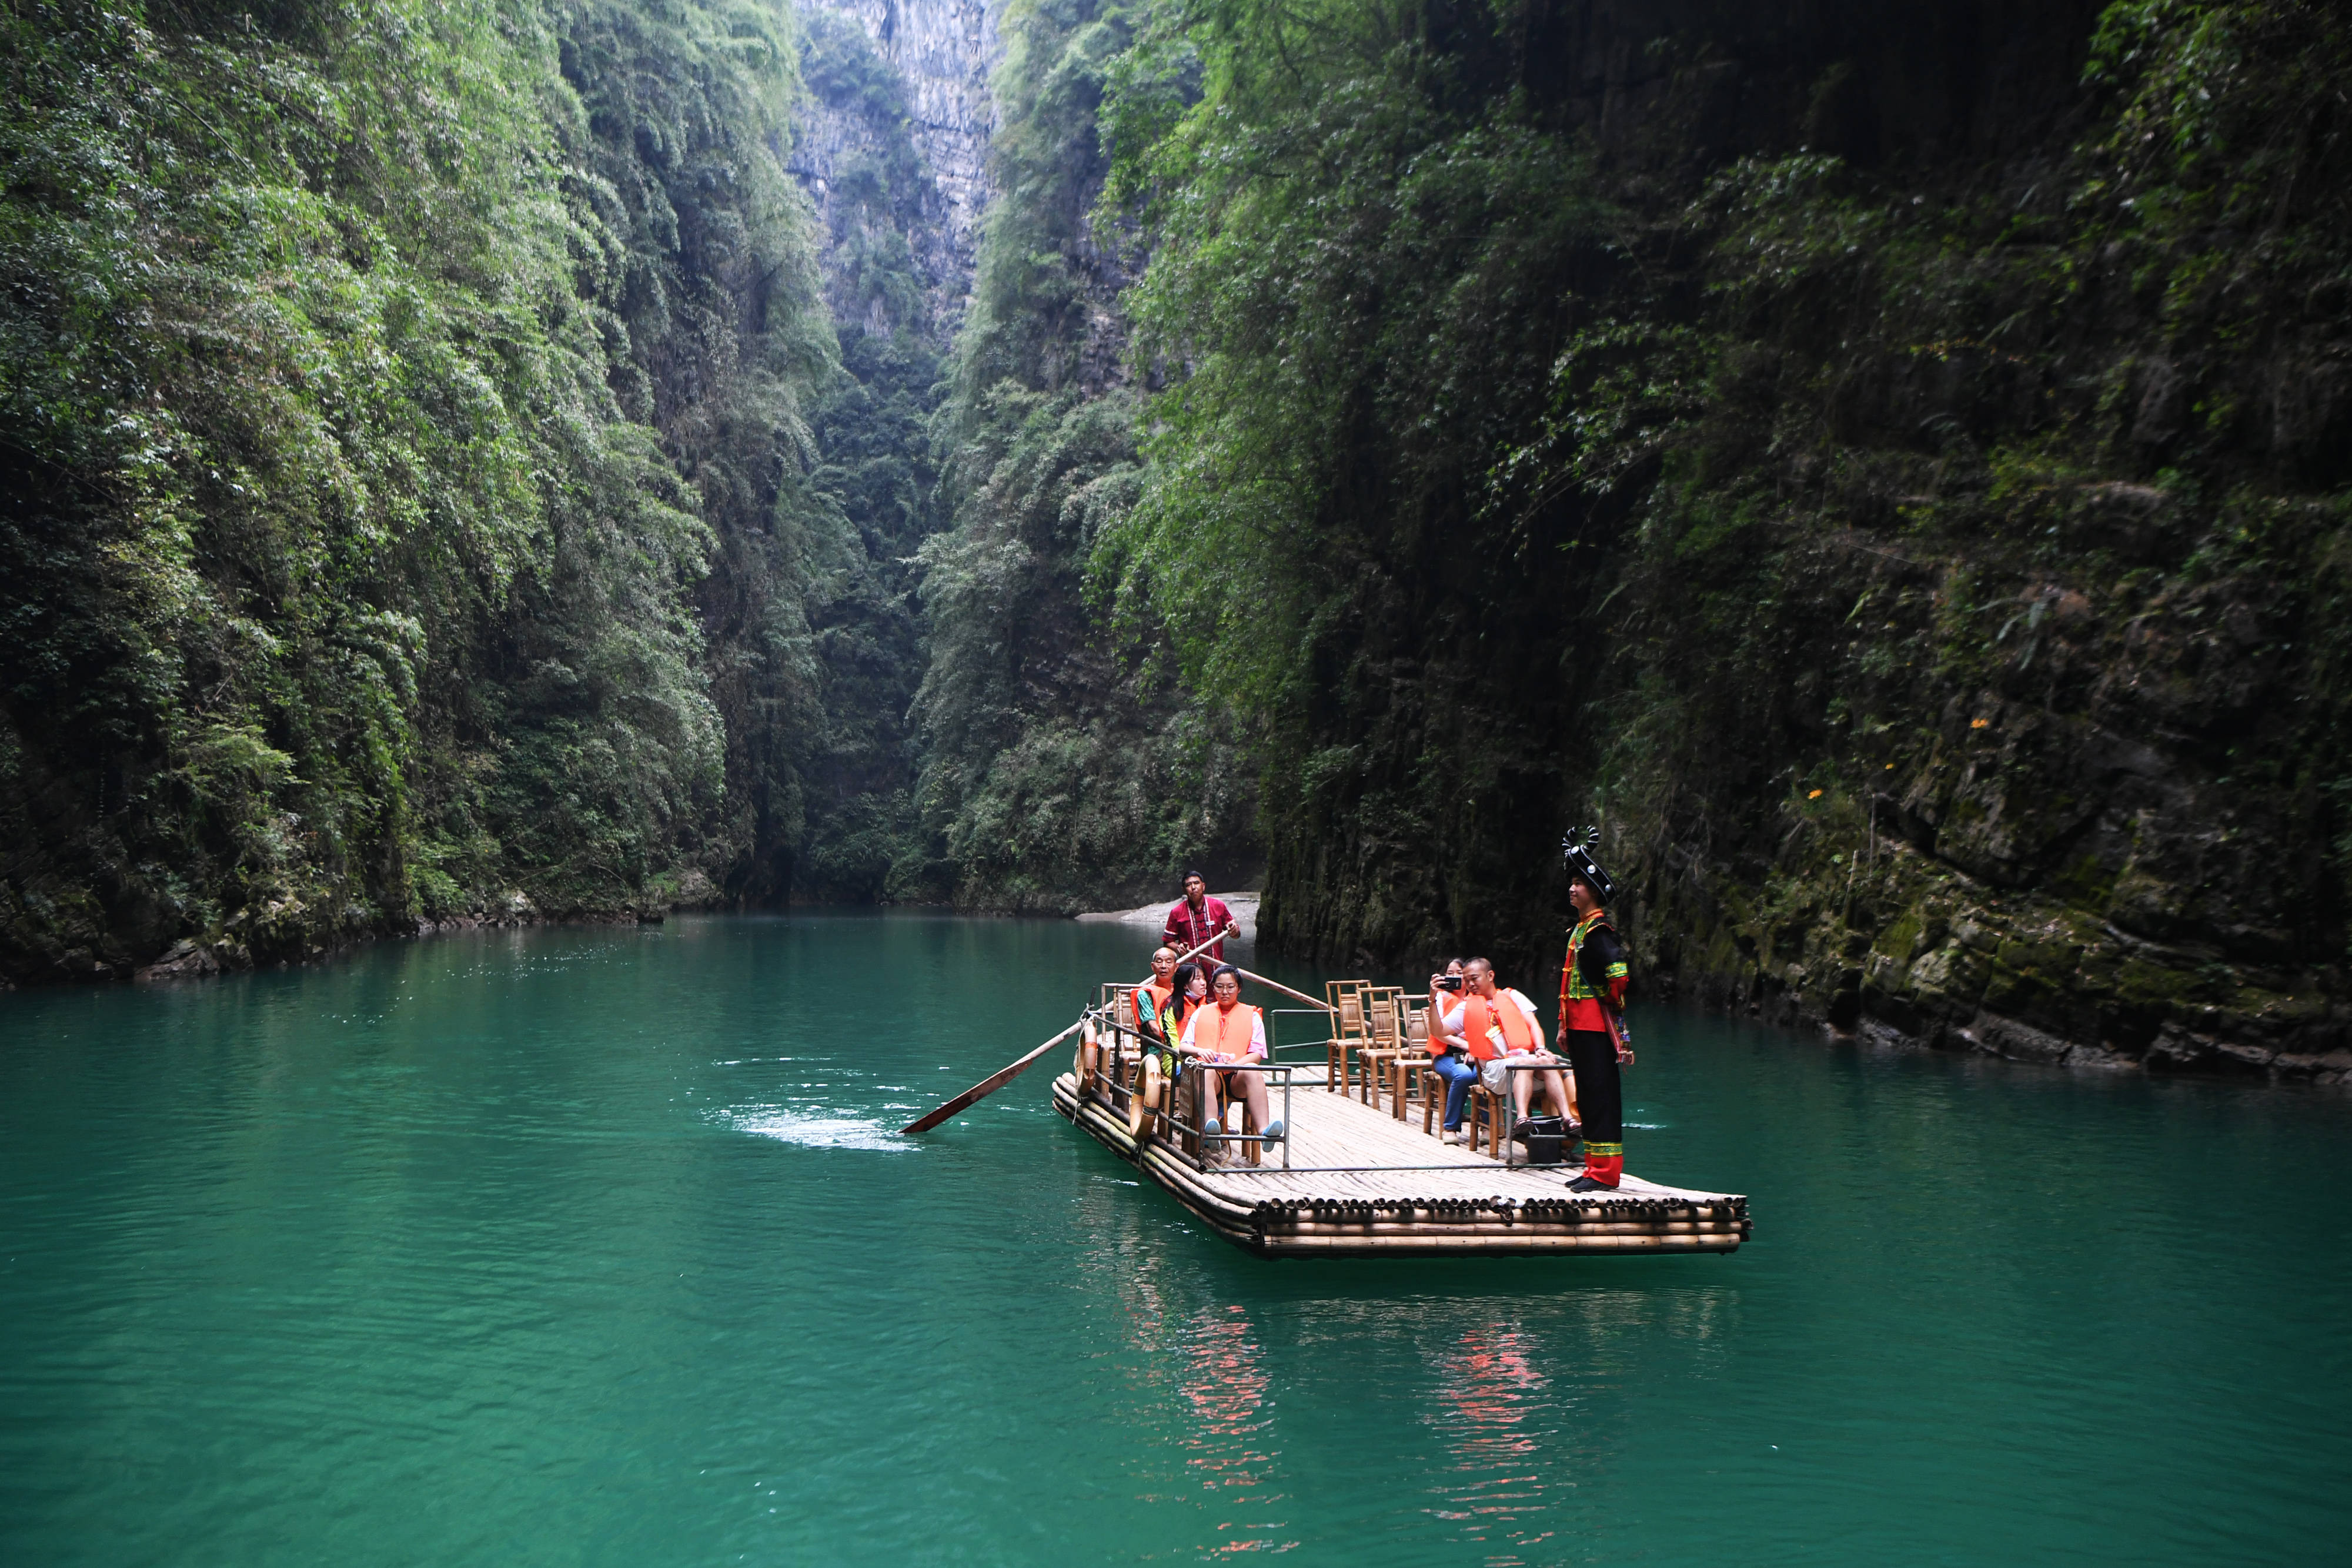 游客在阿依河景区乘坐竹筏游览(8月13日摄)